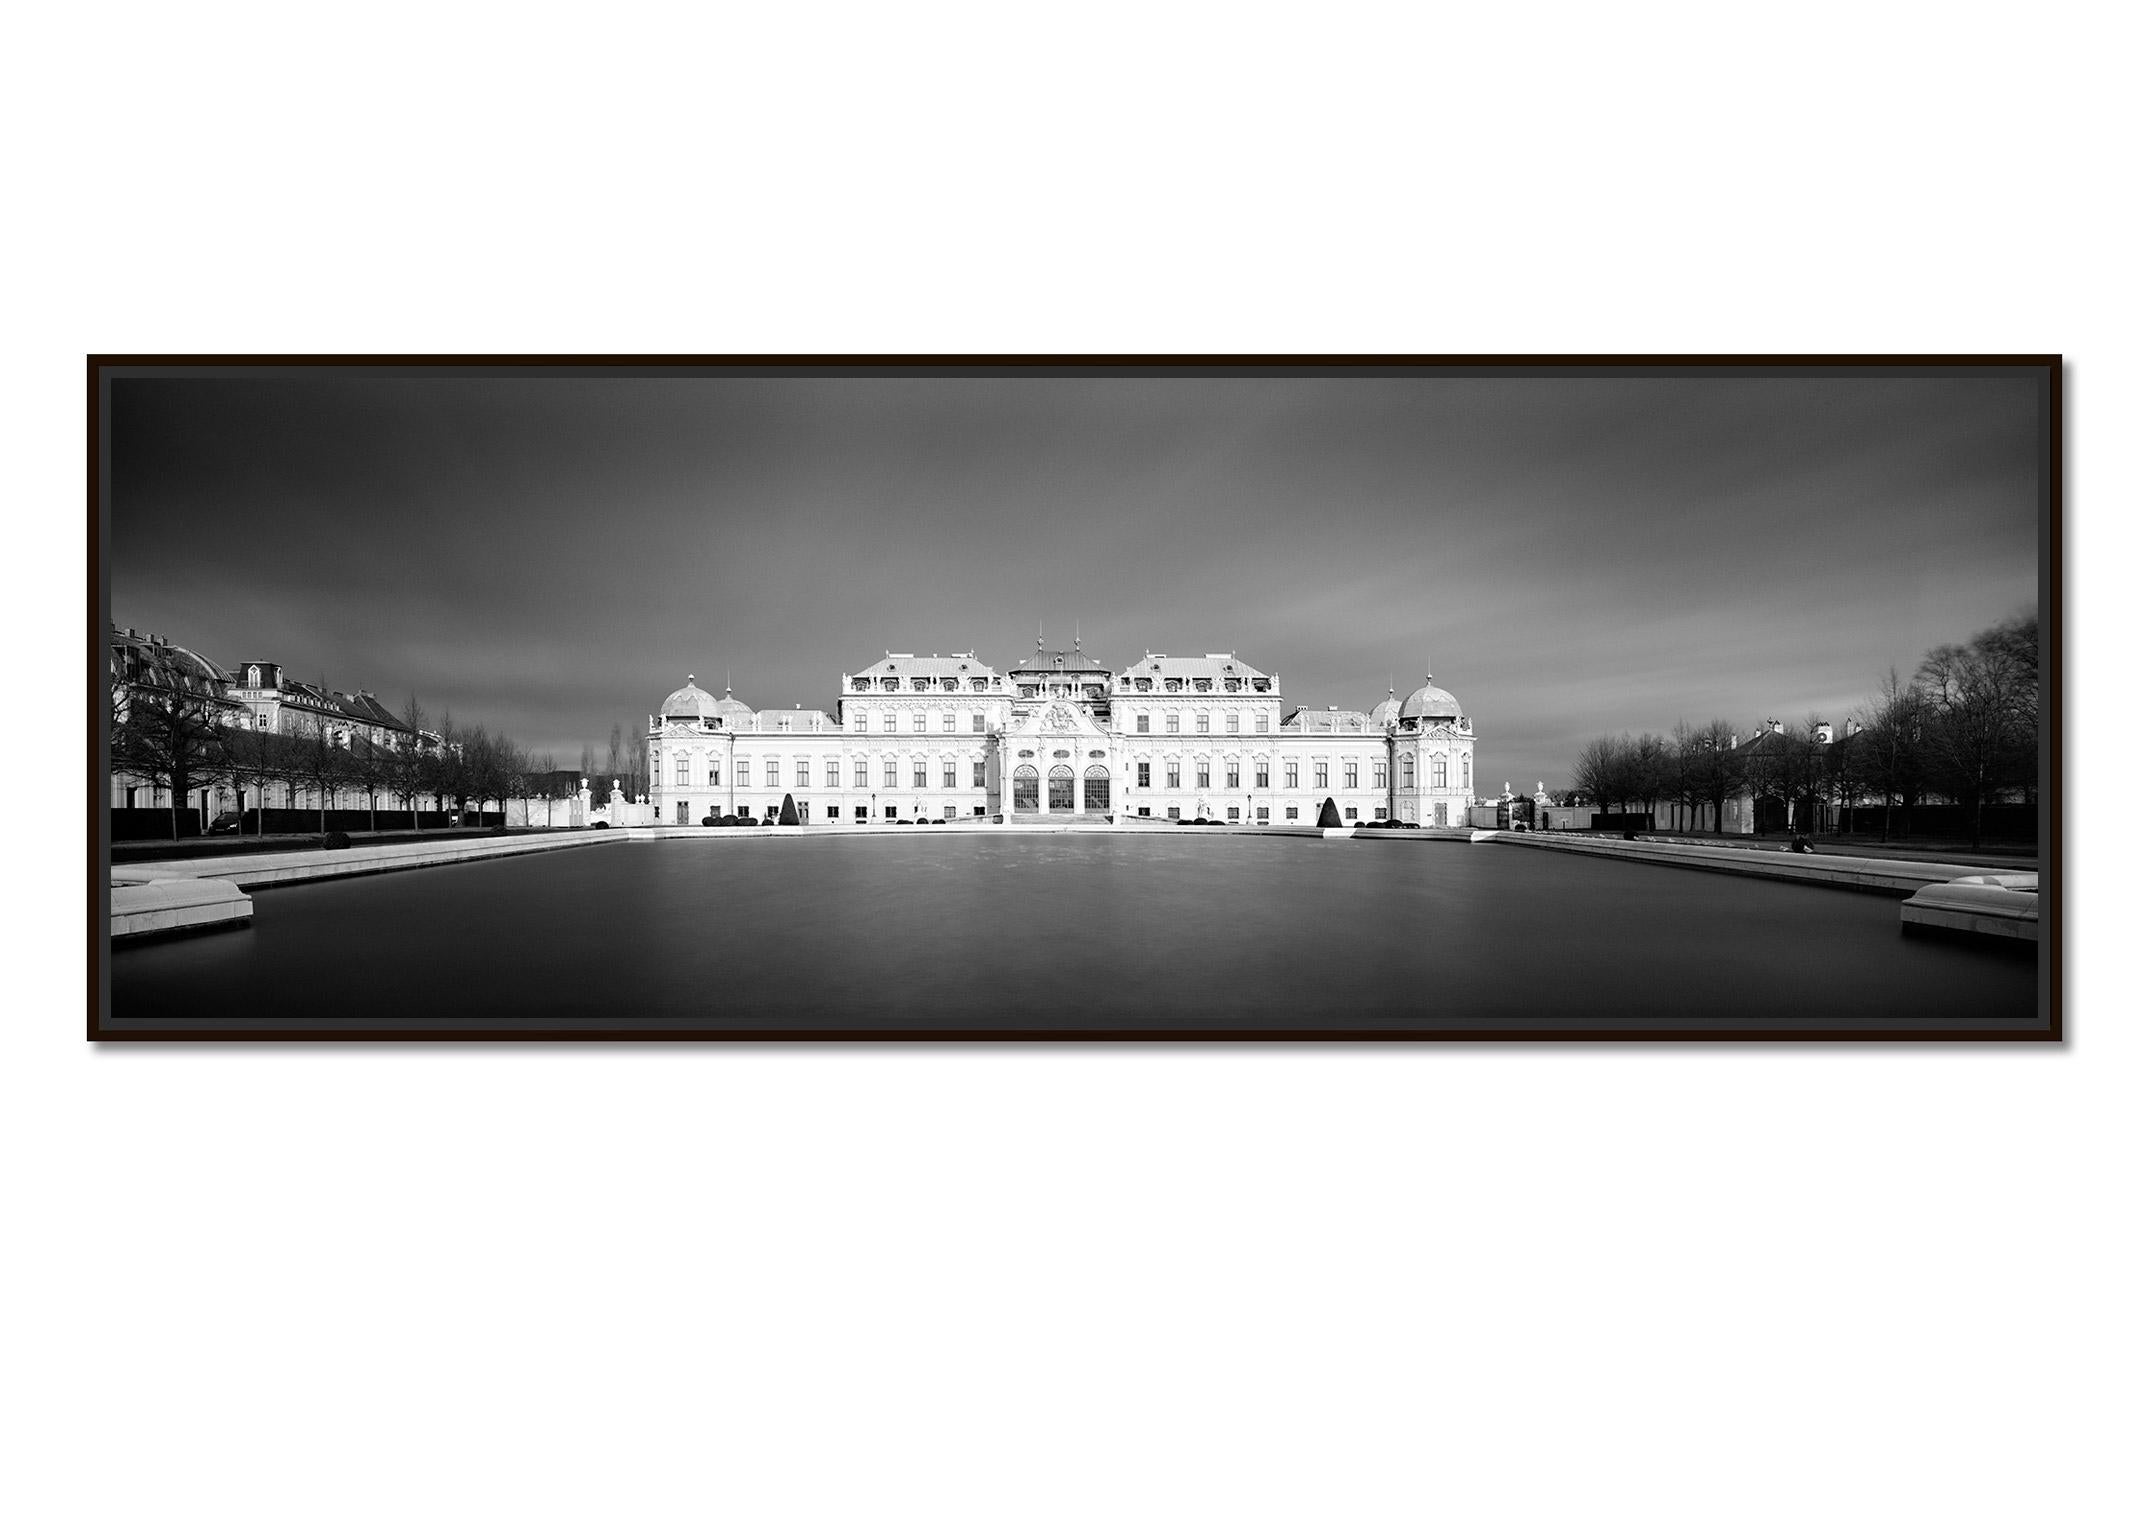 Oberes Belvedere, Panorama, dunkler Himmel, Wien, schwarz-weiß Landschaftsfotografie – Photograph von Gerald Berghammer